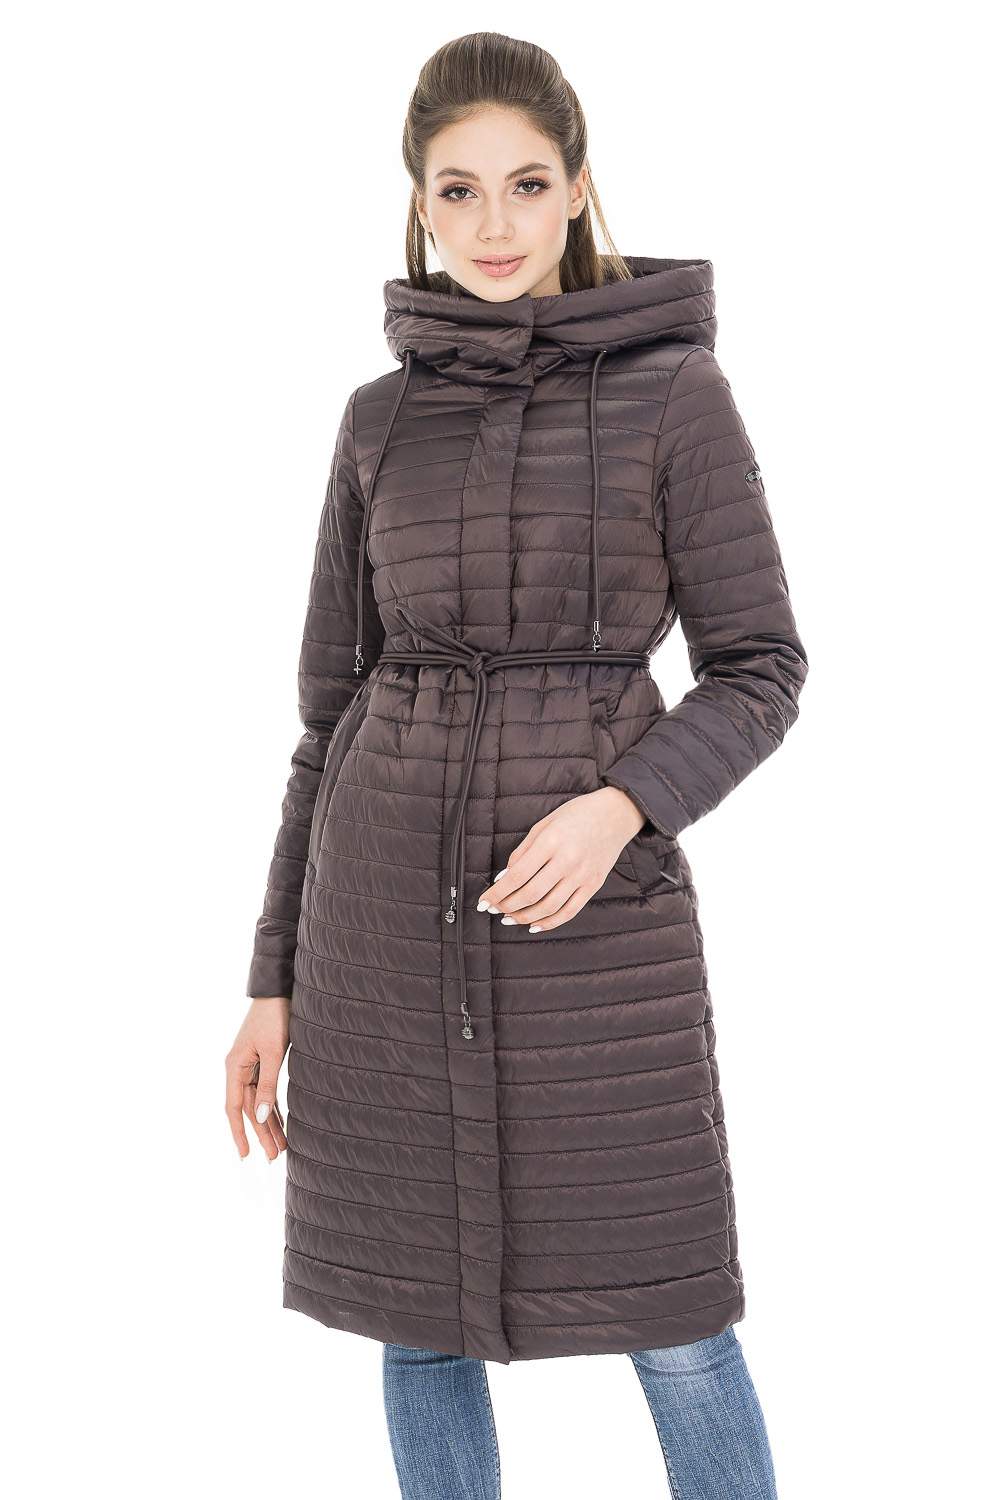 Пальто женское OHARA XC-20711 коричневое 44 RU